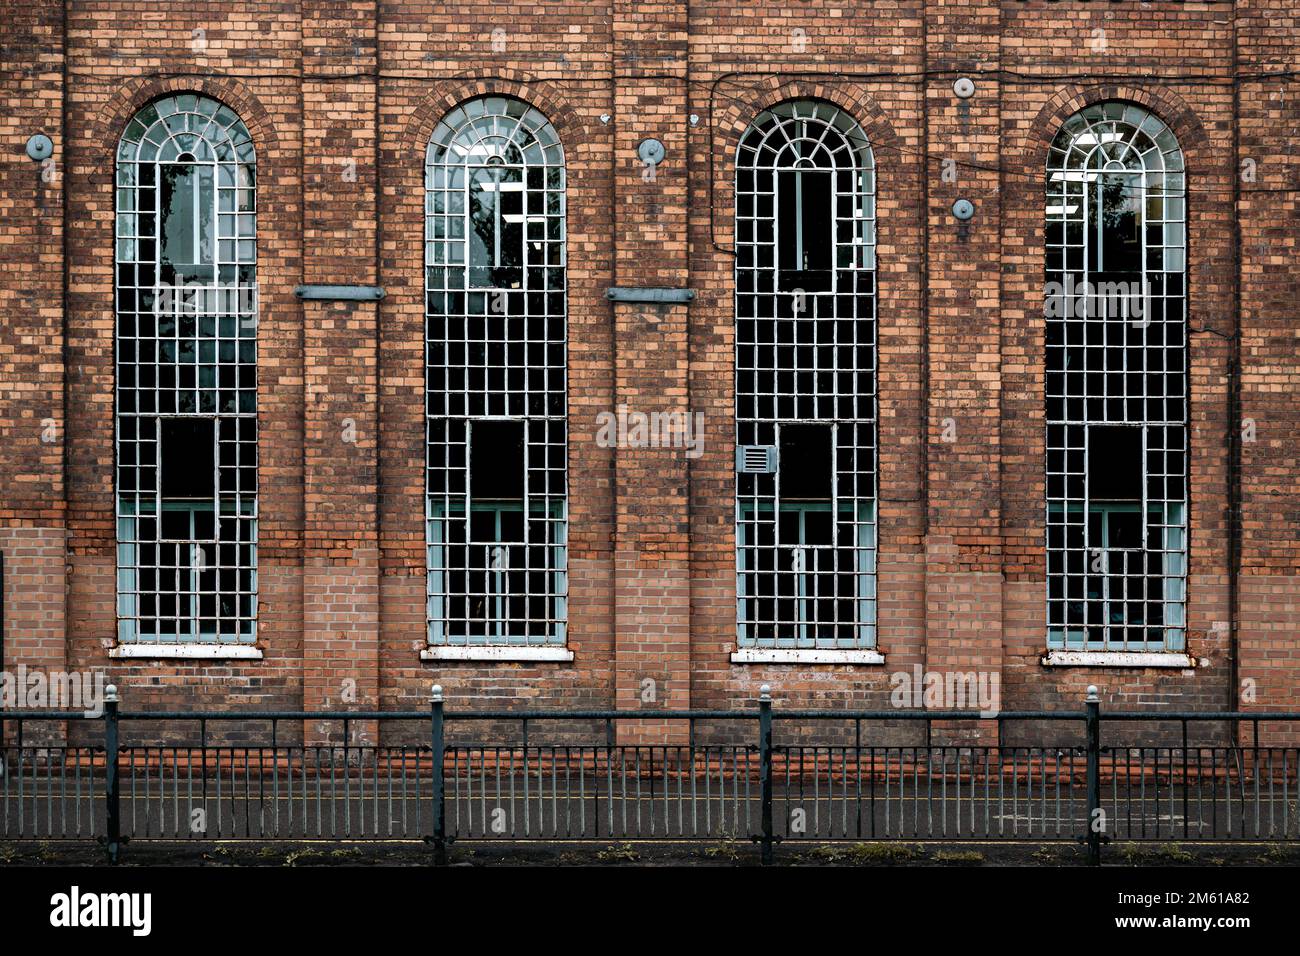 Particolare di alcuni vecchi edifici industriali con alte finestre ad arco. Ingegneria, locali commerciali, officina, concetto di settore. Foto Stock